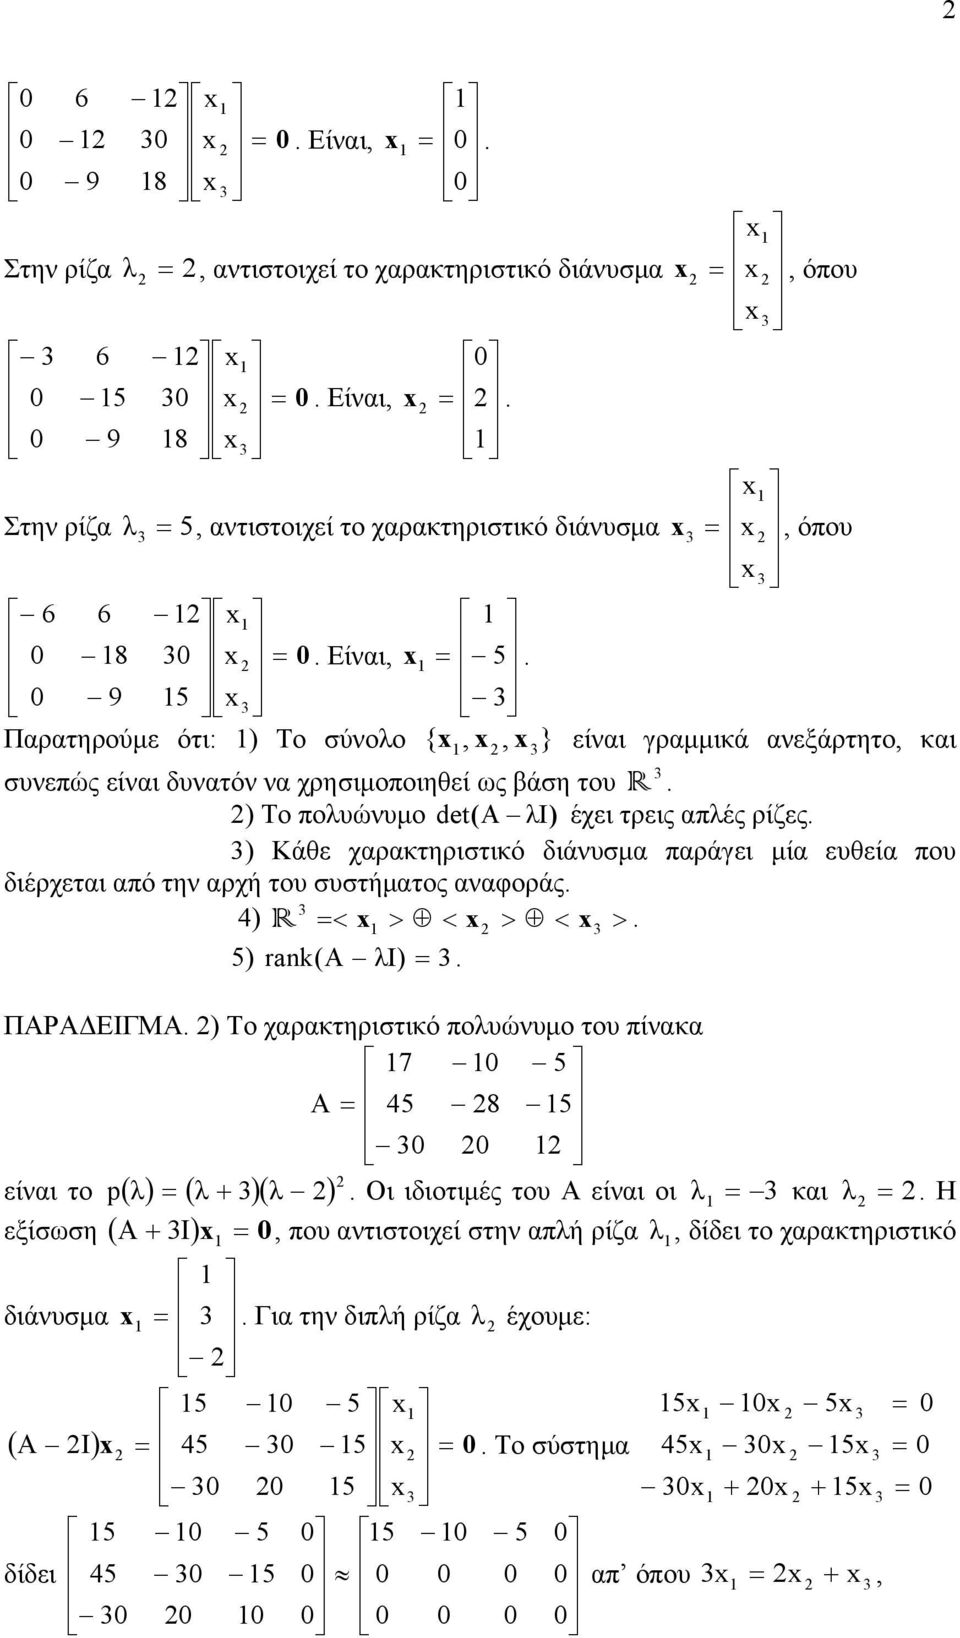 που διέρχετι πό την ρχή του συστήμτος νφοράς 4) R < > < > < > 5) r nk(a I) ΠΑΡΑΔΕΙΓΜΑ ) Το χρκτηριστικό πουώνυμο του πίνκ 7 5 A 45 8 5 είνι το p( ) ( )( ) Οι ιδιοτιμές του Α